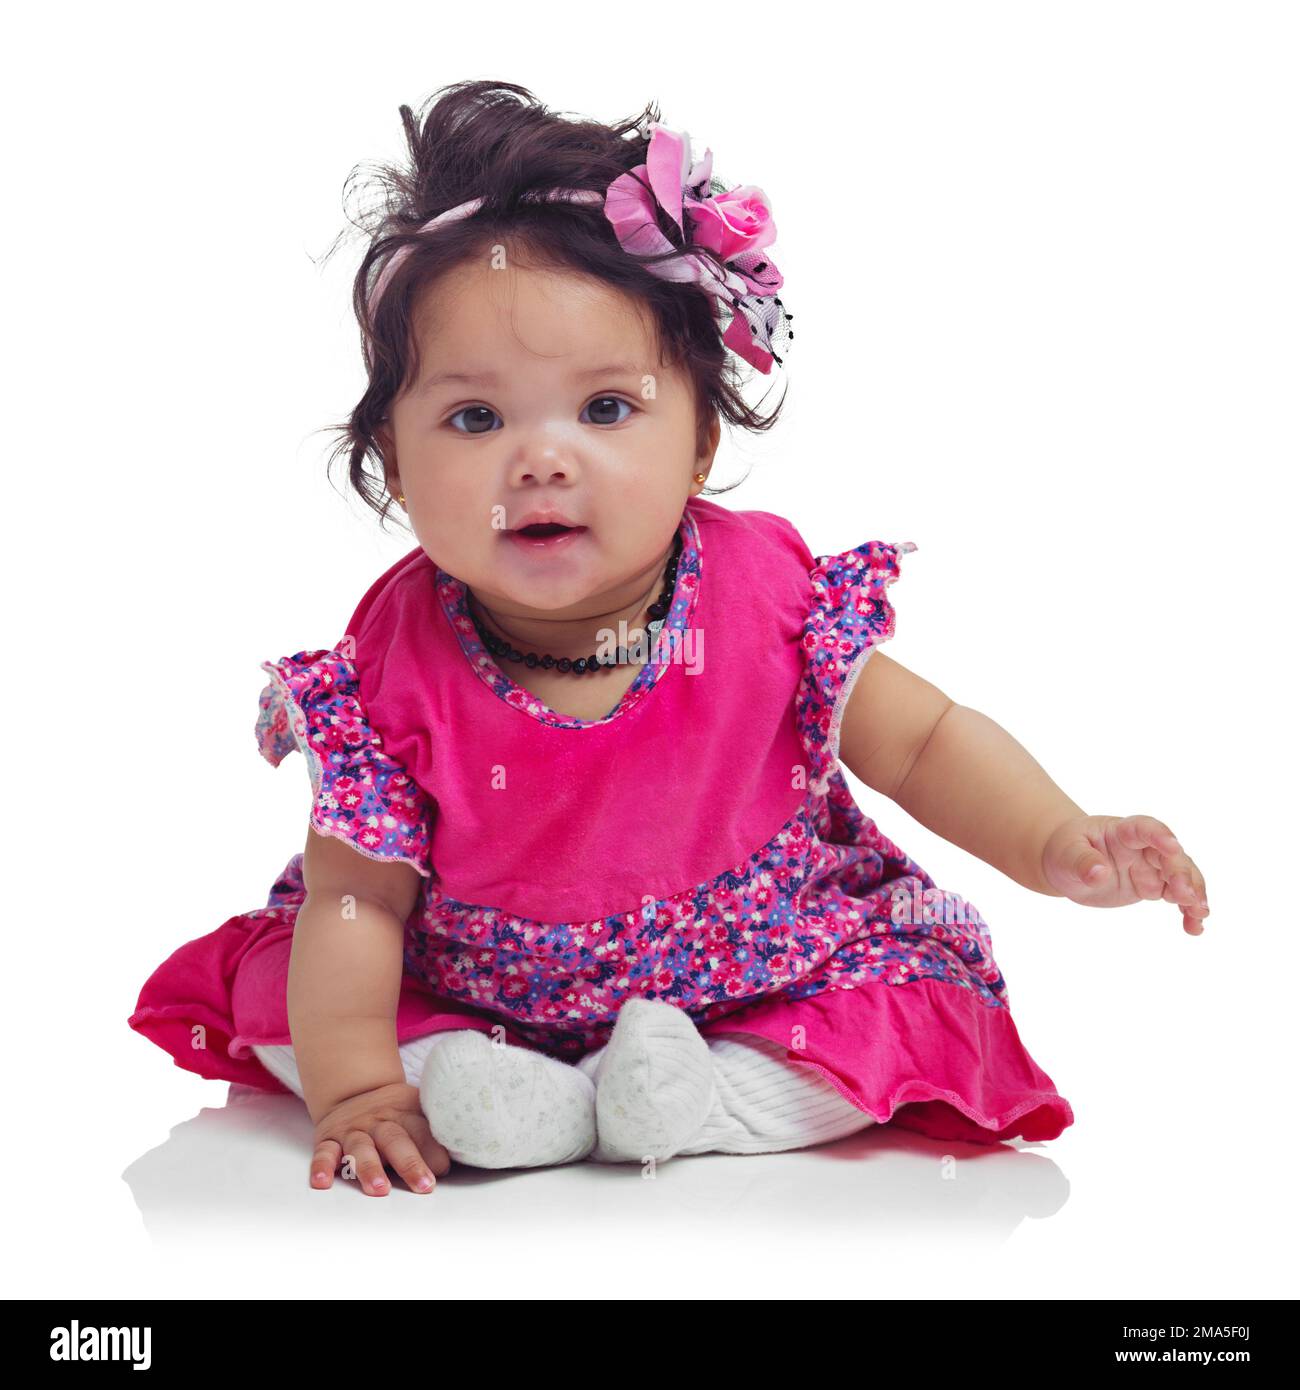 Süß, glücklich und Porträt eines kleinen Mädchens, das isoliert auf weißem Hintergrund in einem Studio sitzt. Mädchen, verspielt und unschuldig, liebenswert und kleines Kind Stockfoto